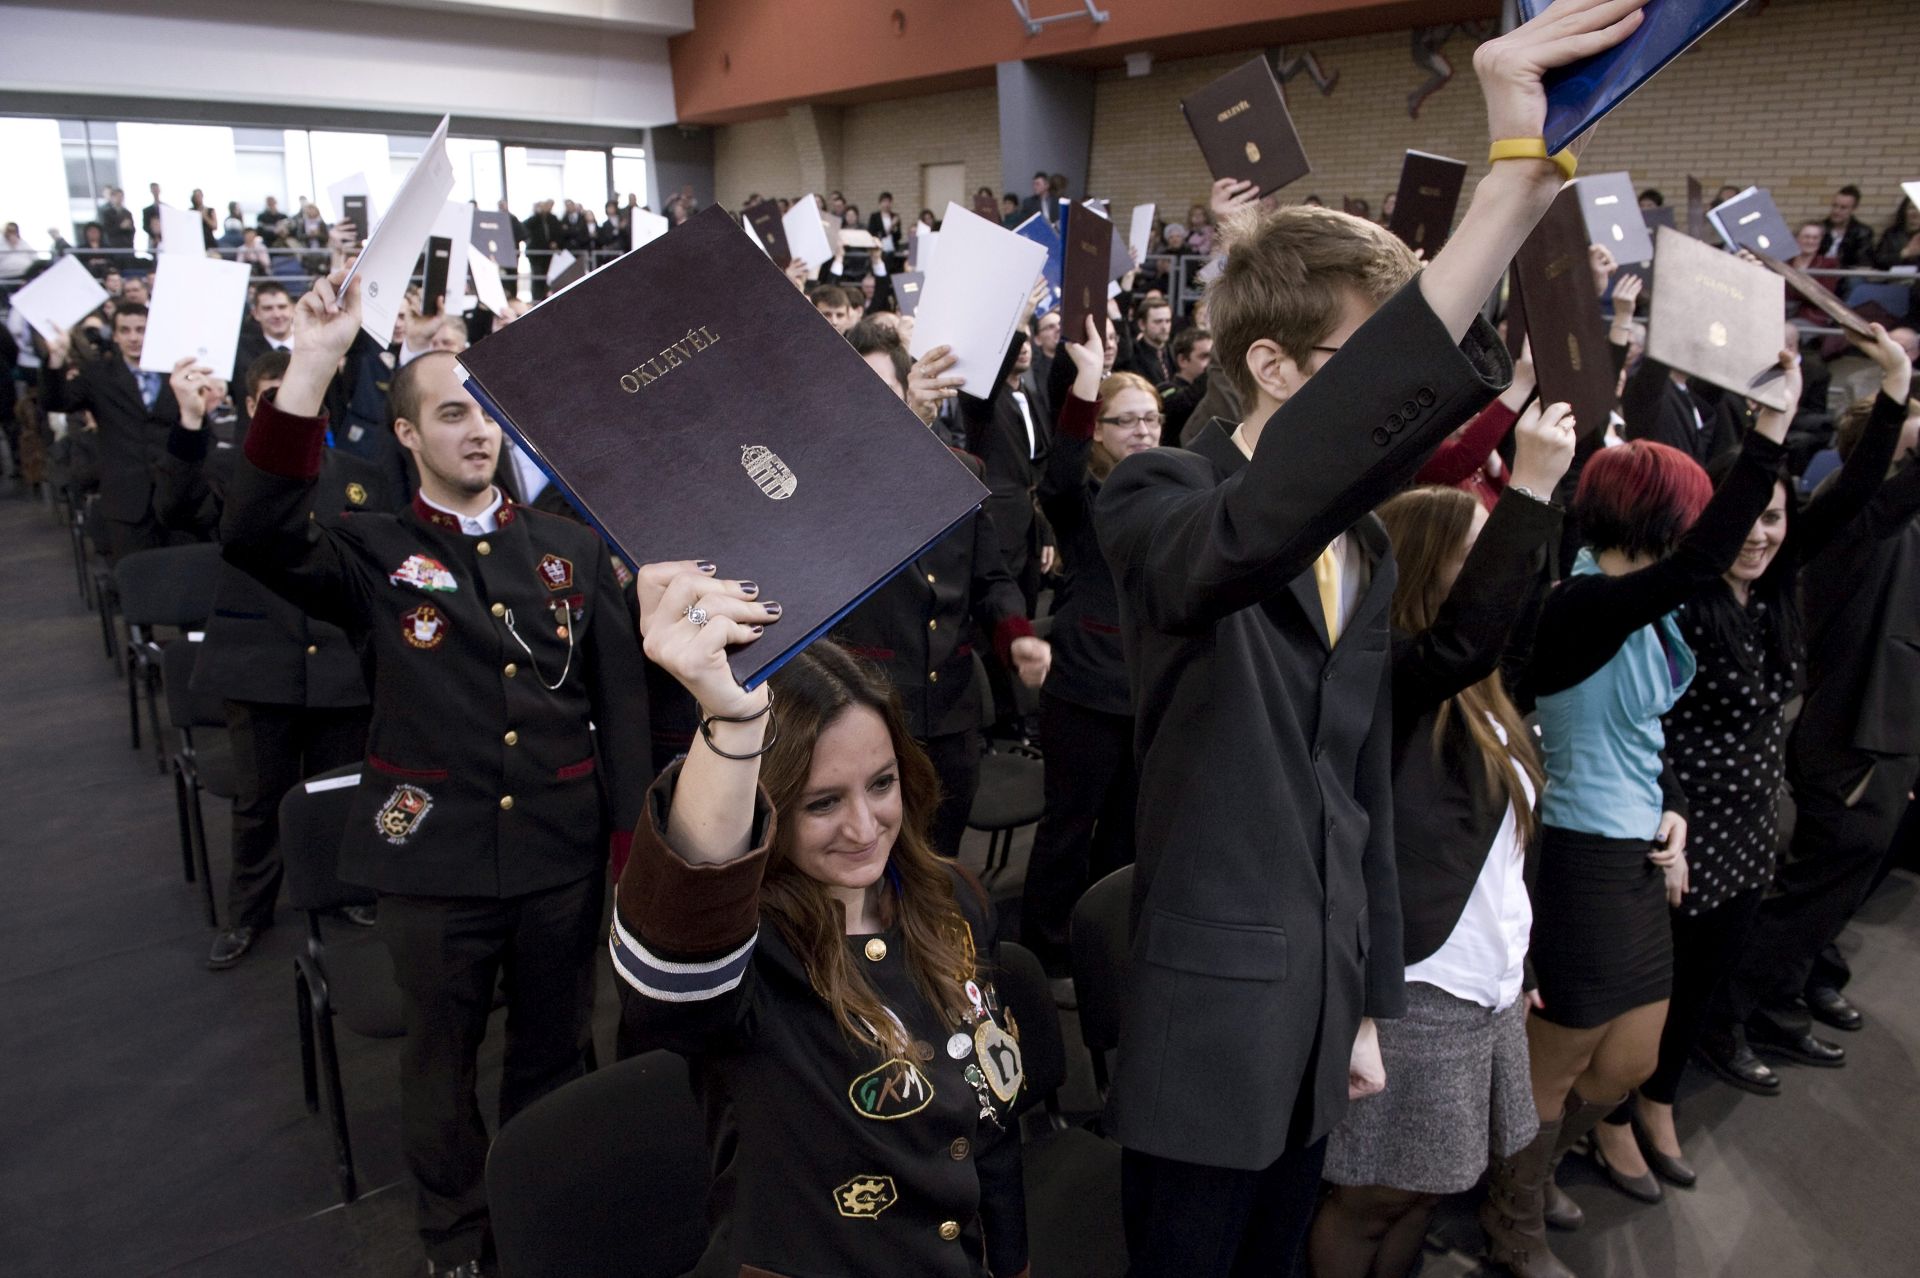 25 ezer diploma ragadhat benn az egyetemeken